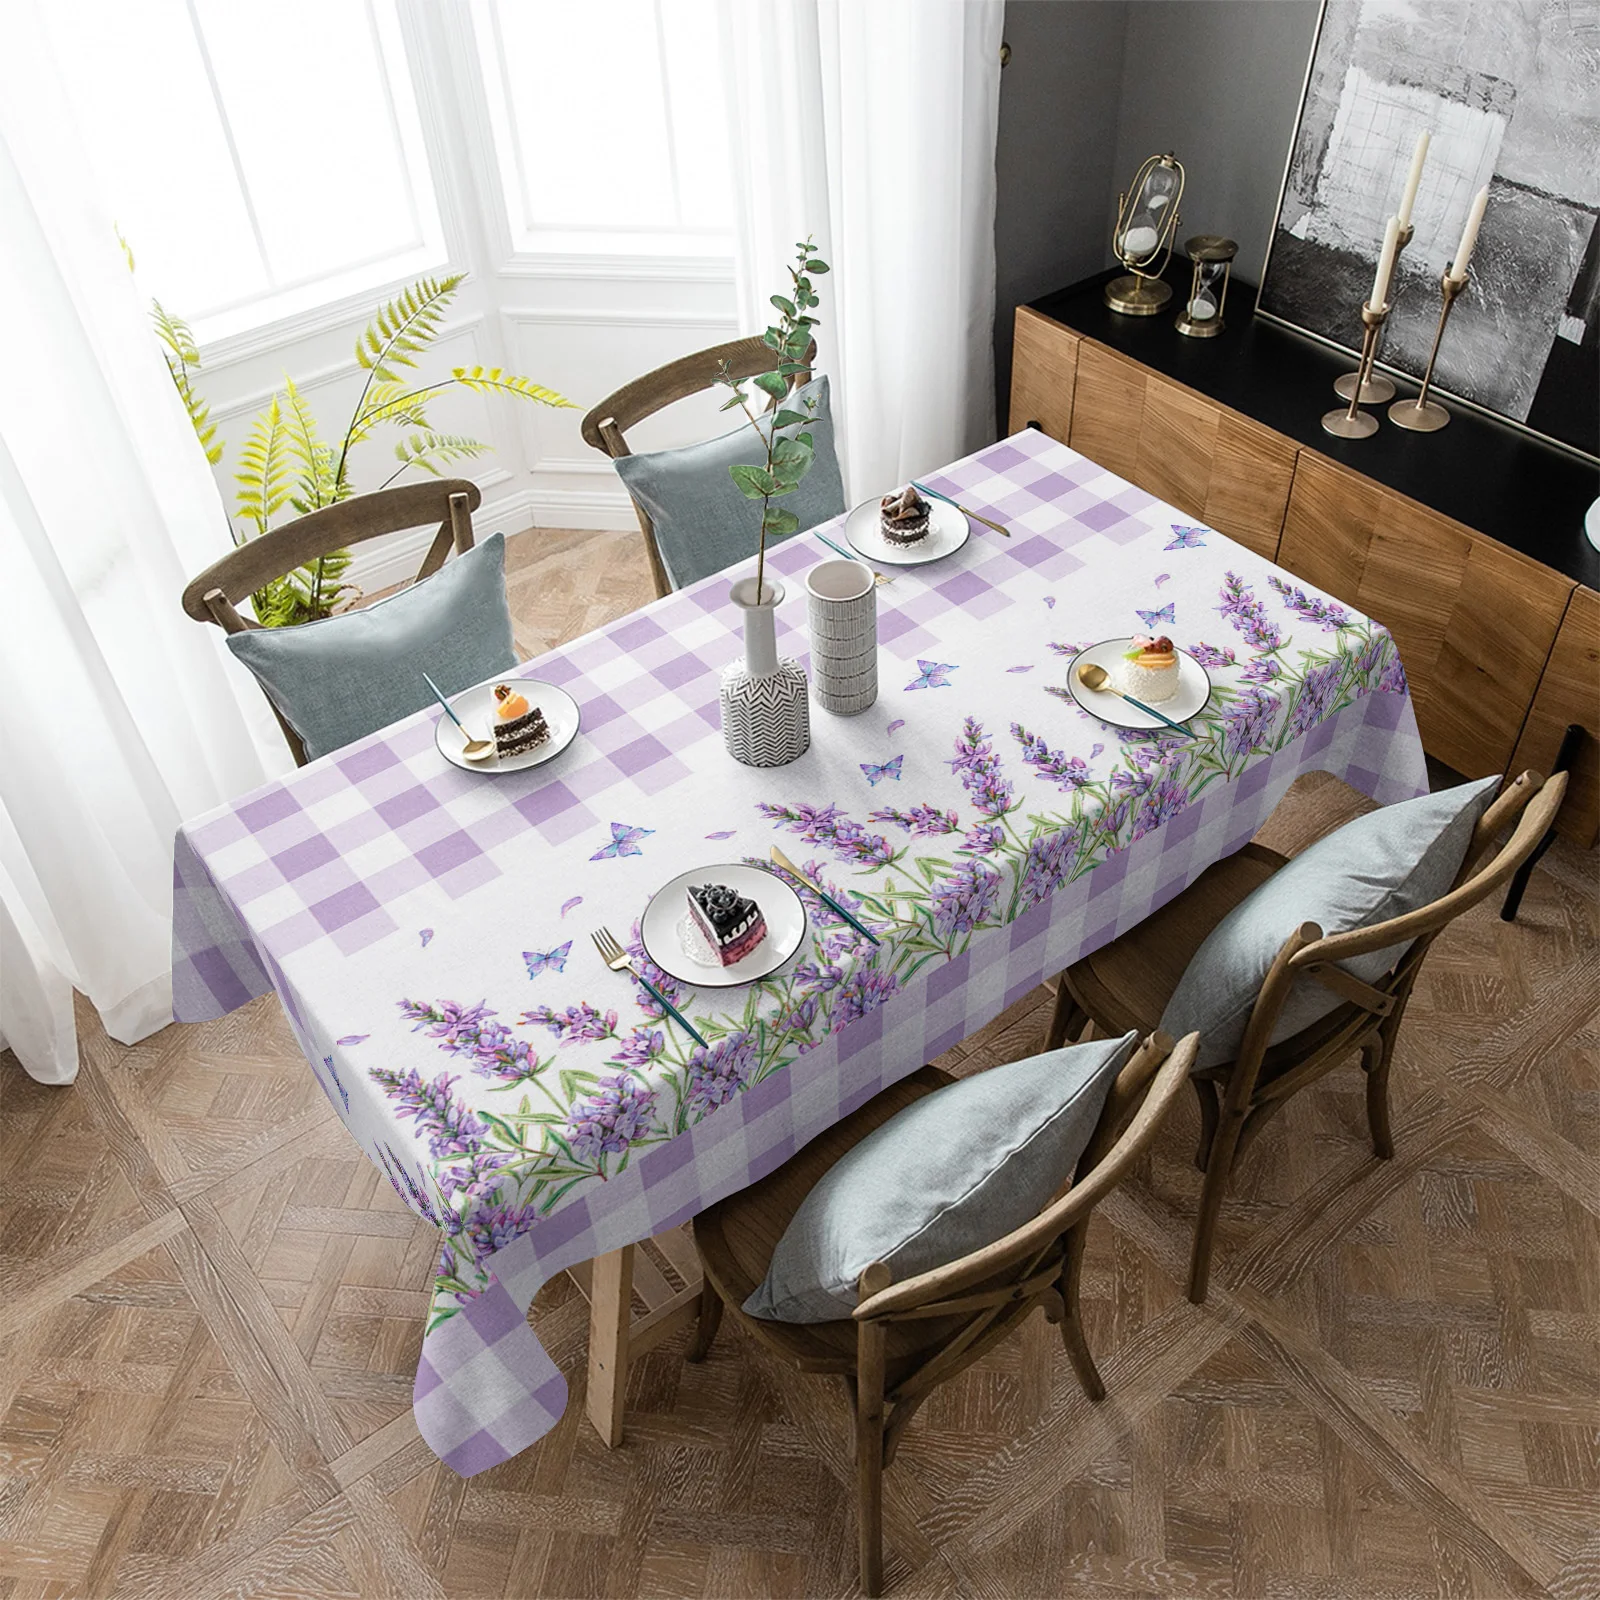 

Водонепроницаемая скатерть для пикника, фиолетовый клетчатый Прямоугольный Коврик с лавандовым цветком, бабочкой, пыленепроницаемое покрытие для кухонного стола